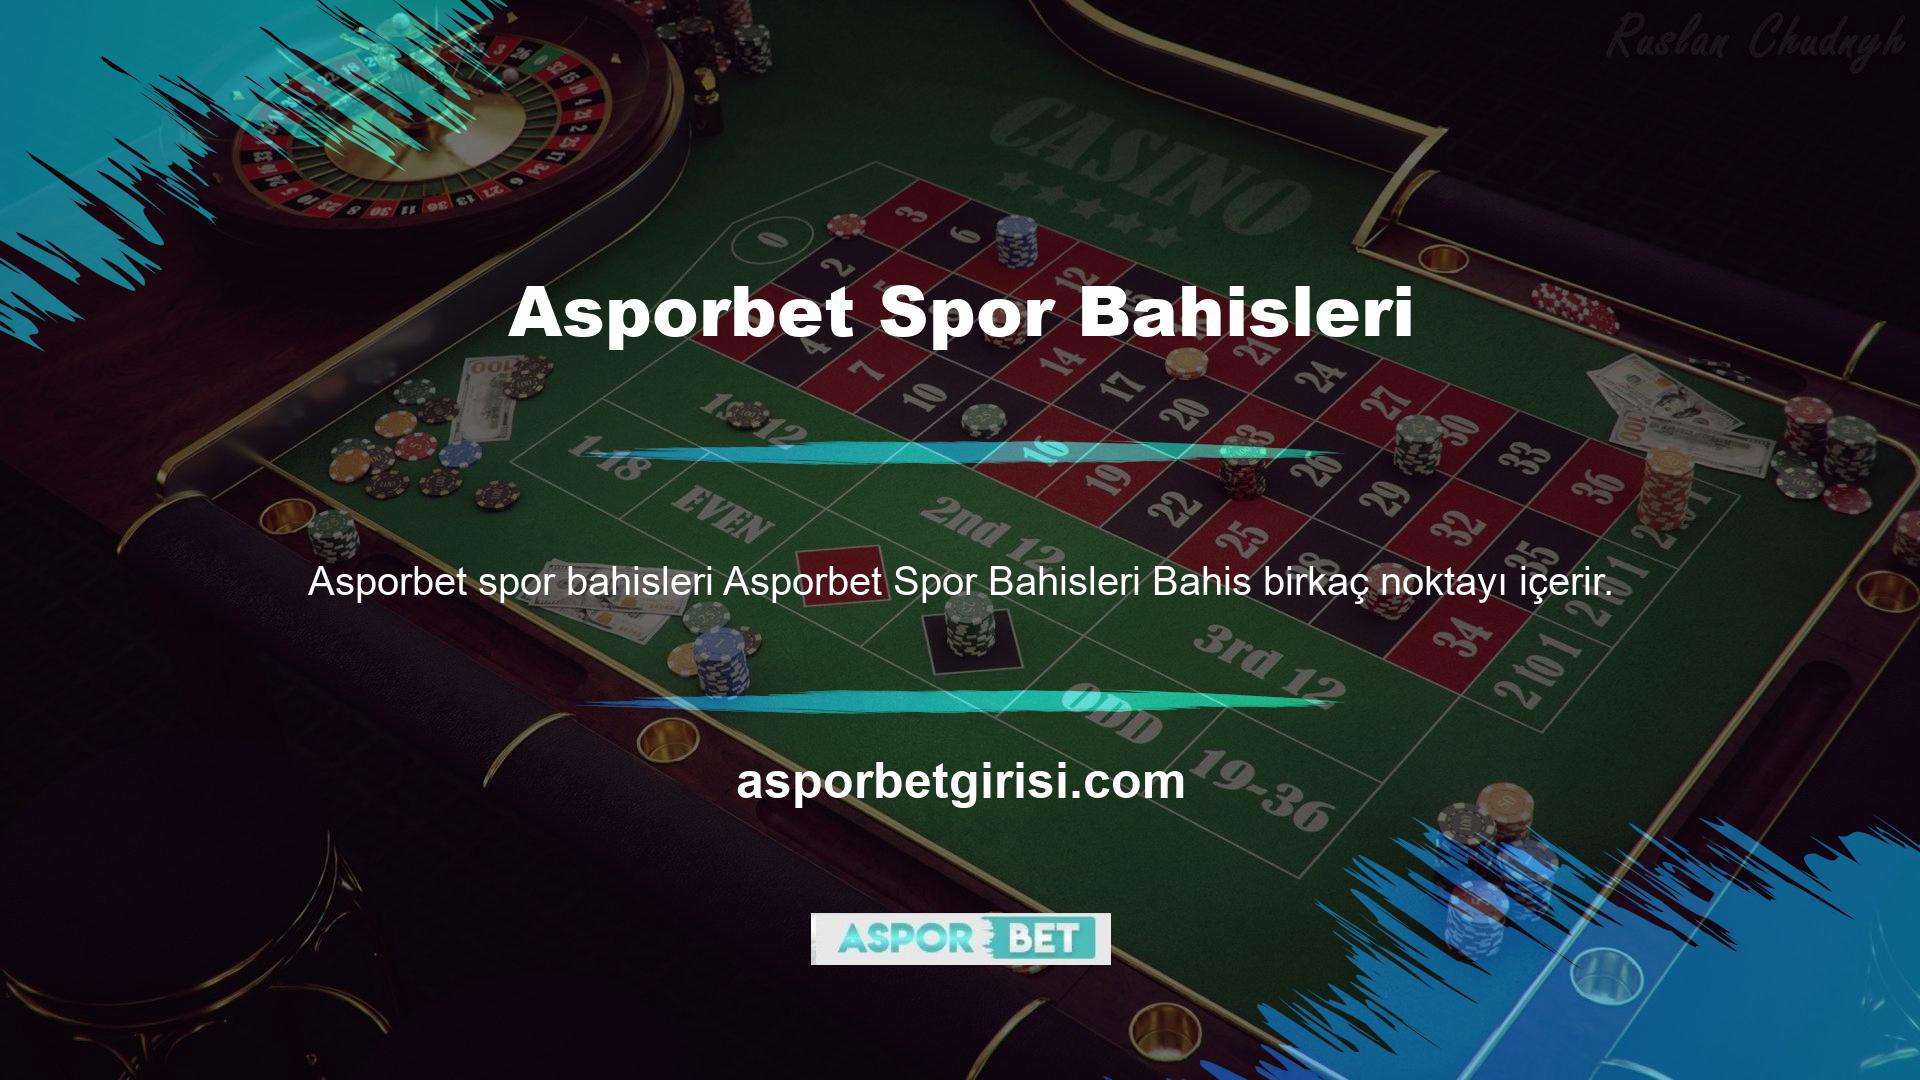 Bütün bahis siteleri arasında Asporbet sitesi en fazla oyunu sunar